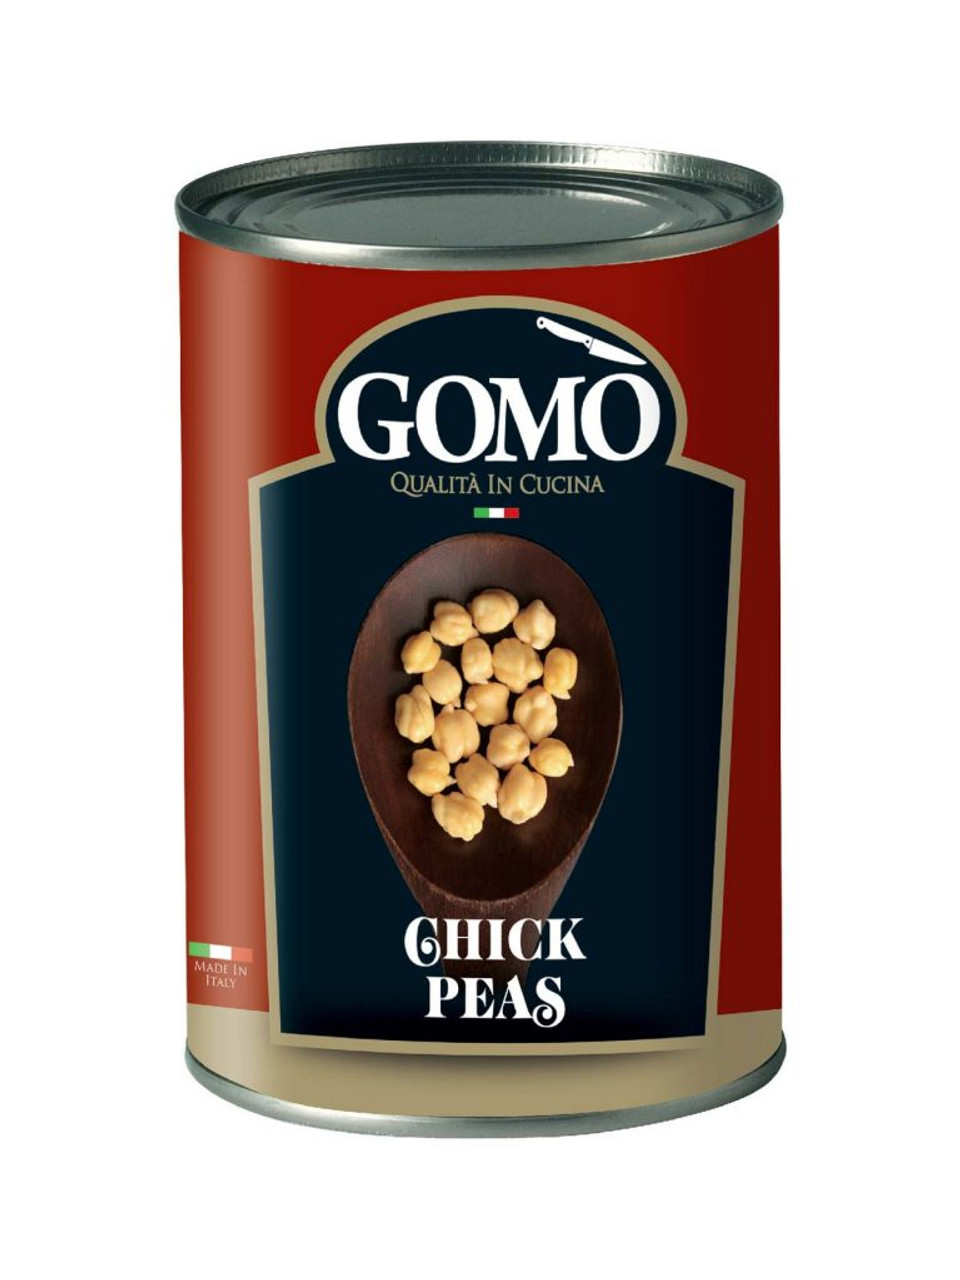 GOMO CHICK PEAS 400g